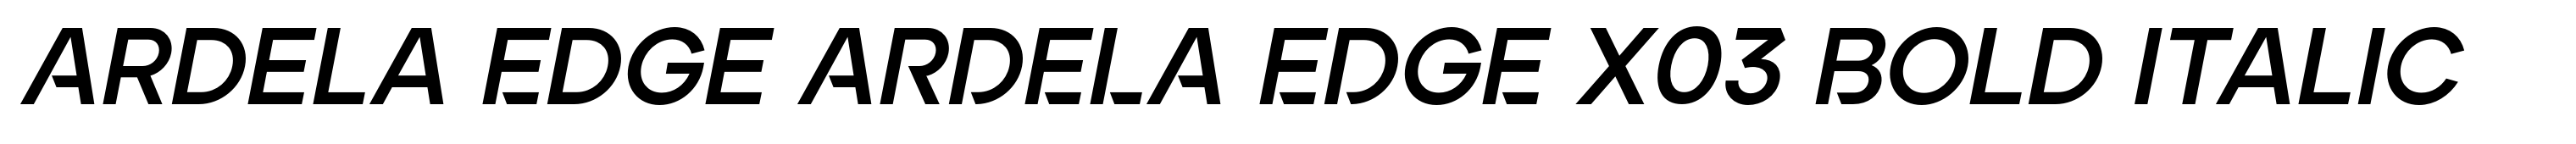 Ardela Edge ARDELA EDGE X03 Bold Italic